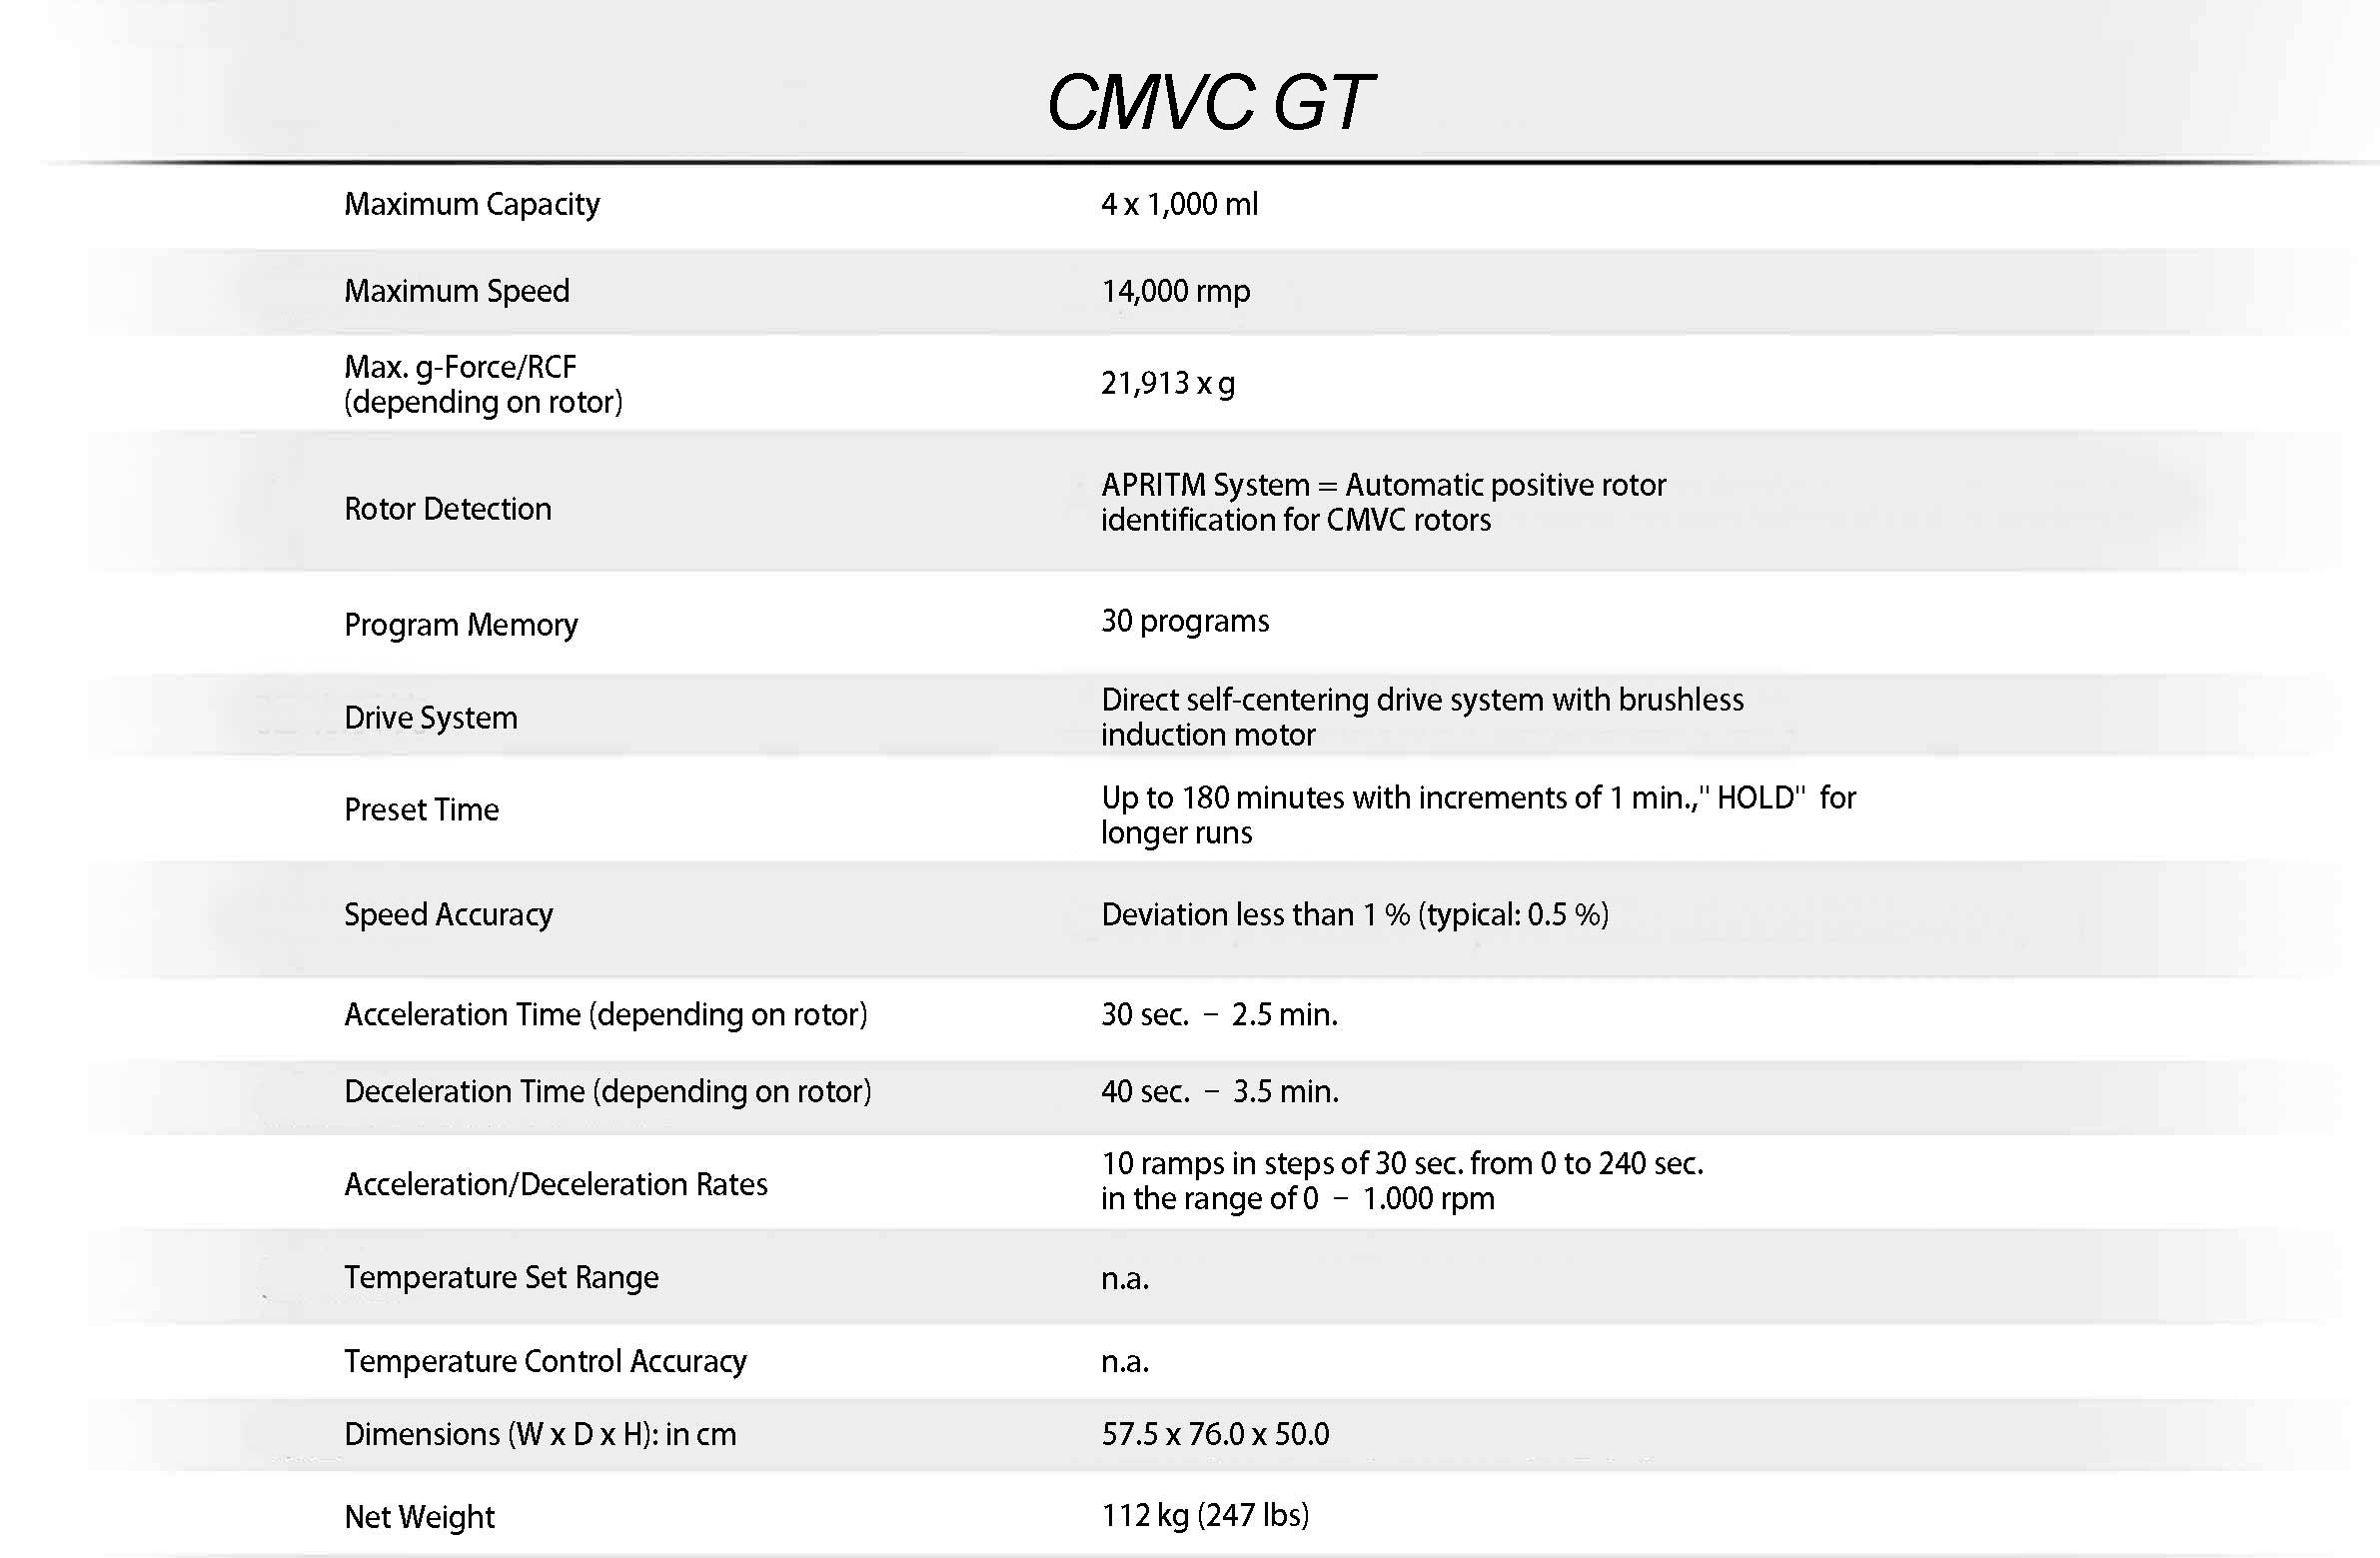 CMVC GT.jpg